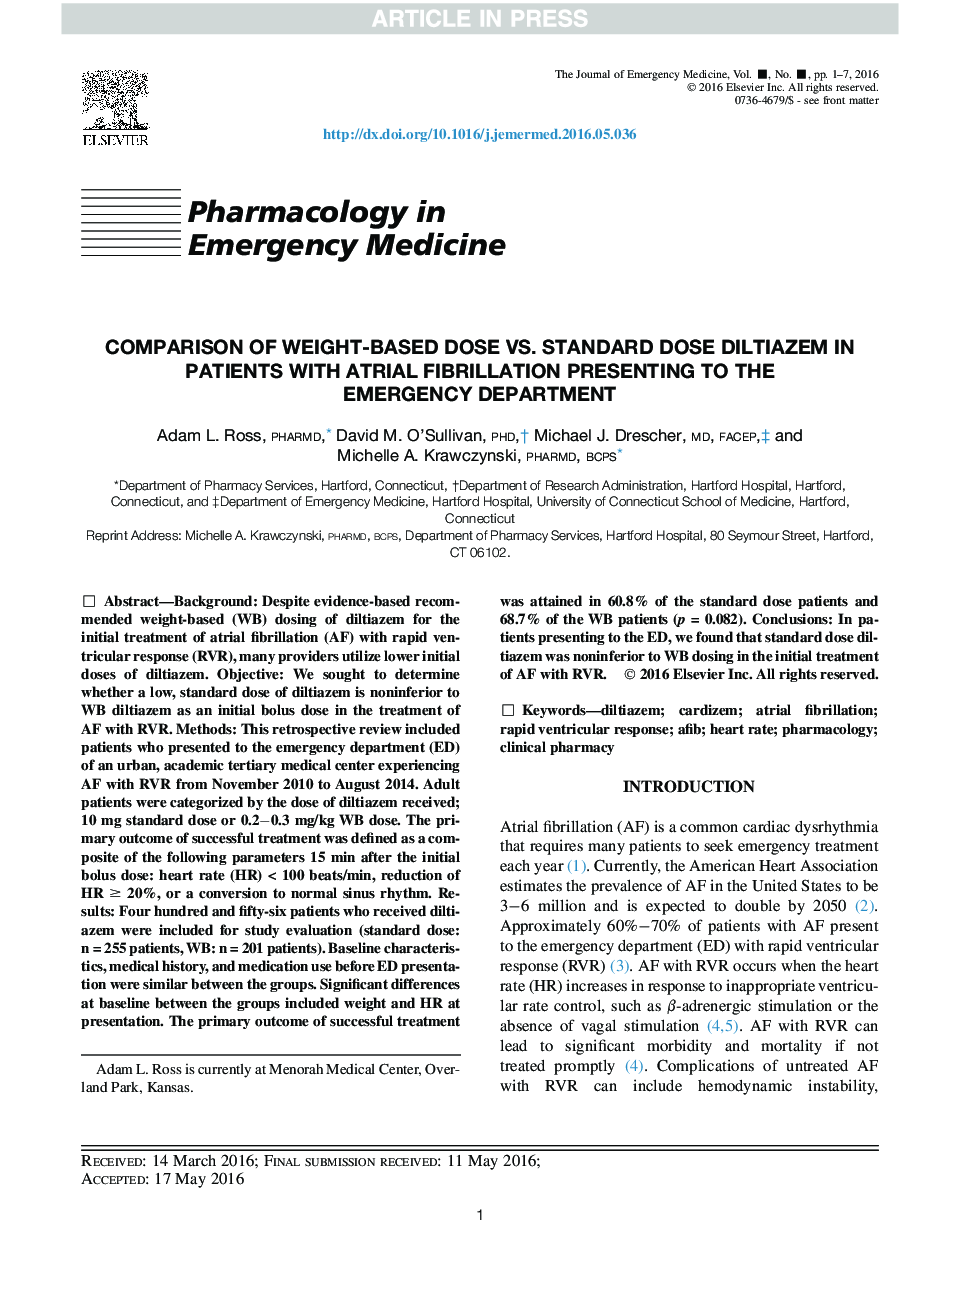 مقایسه دوز پایین وزن در مقایسه با دوز استاندارد دیستازیم در بیماران مبتلا به فیبریلاسیون دهلیزی در بخش اورژانس 